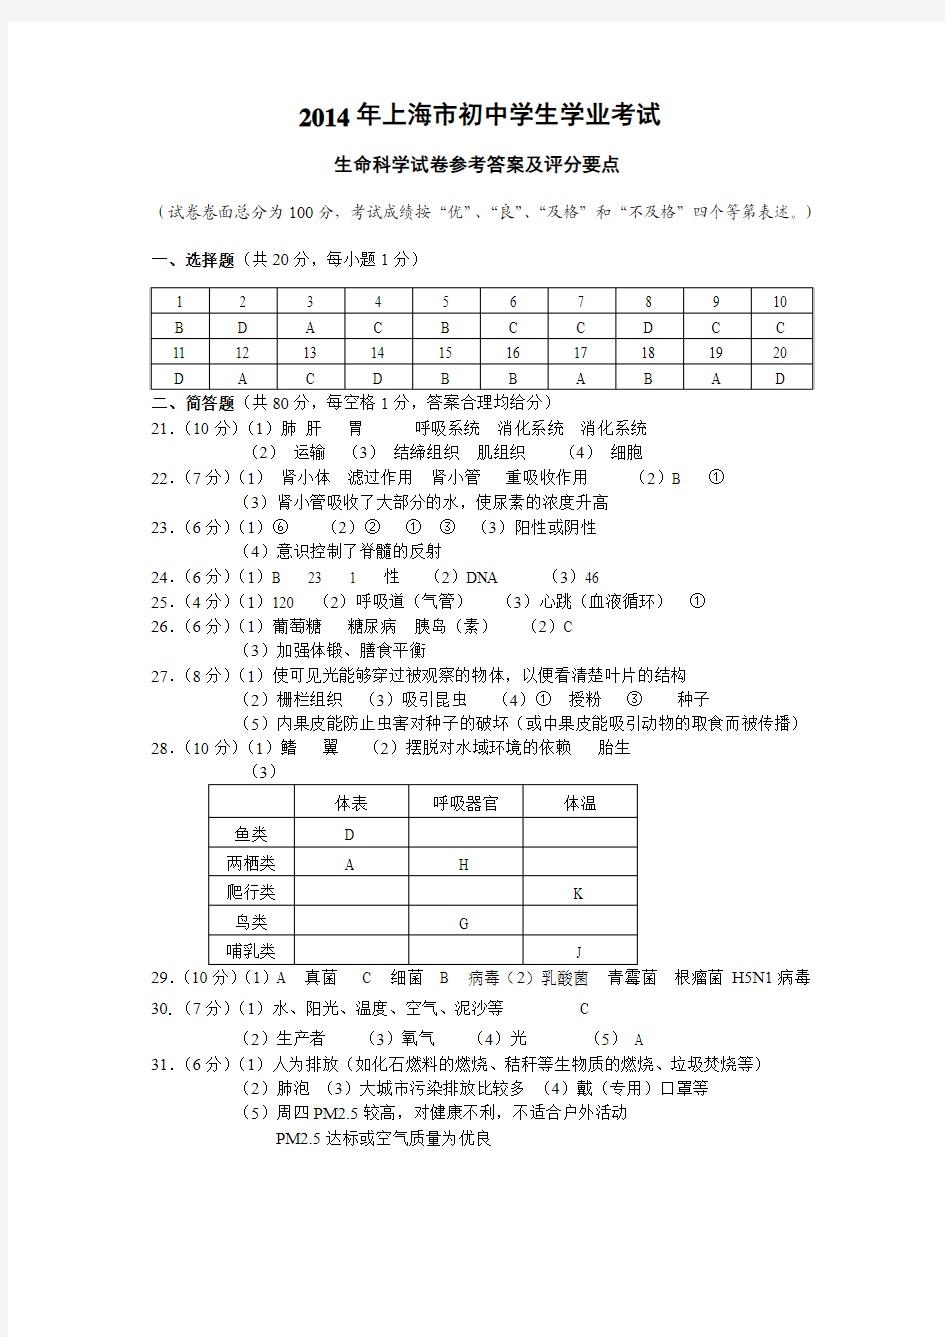 2014年上海市初中学生学业考试生命科学试卷参考答案及评分要点